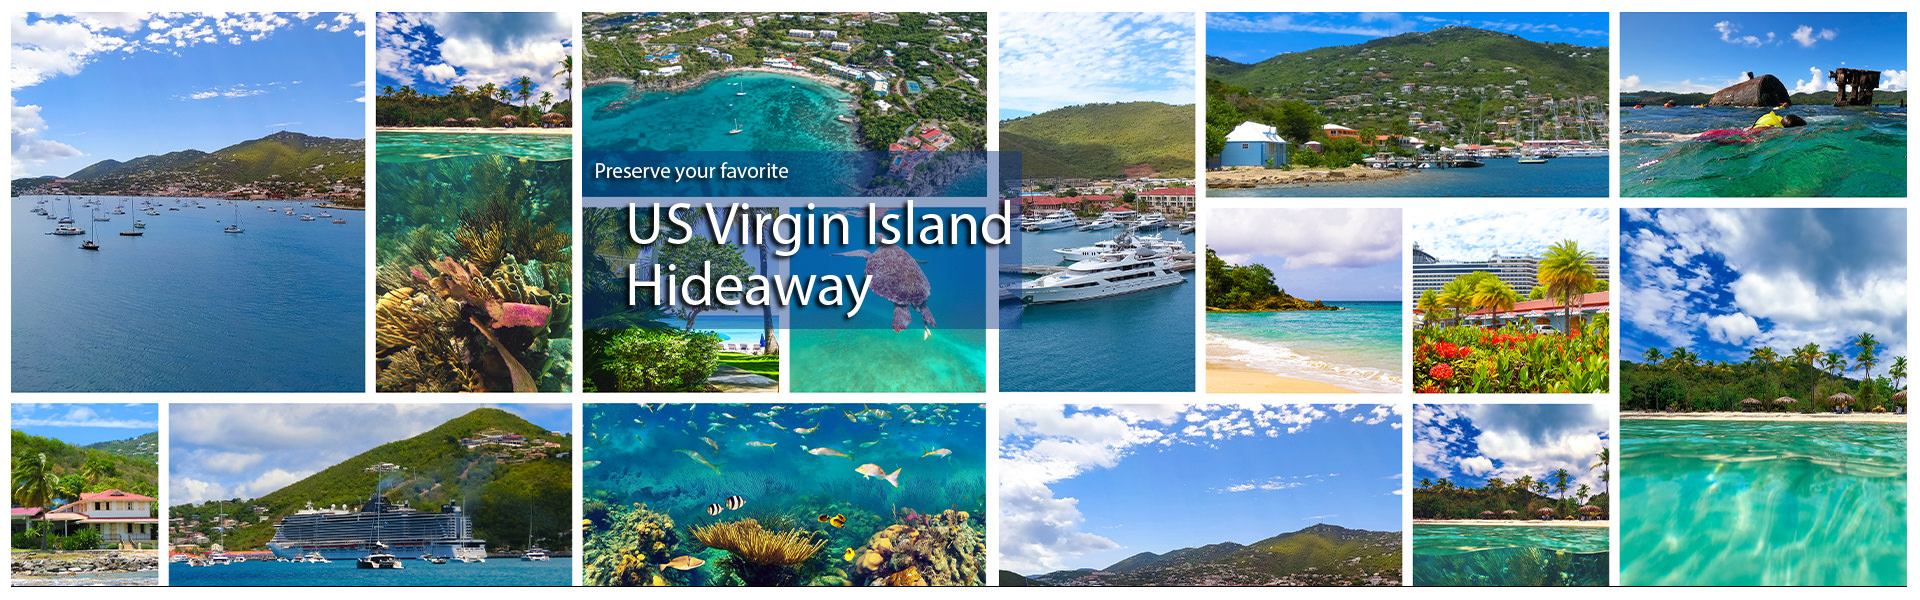 US Virgin Island hideaway